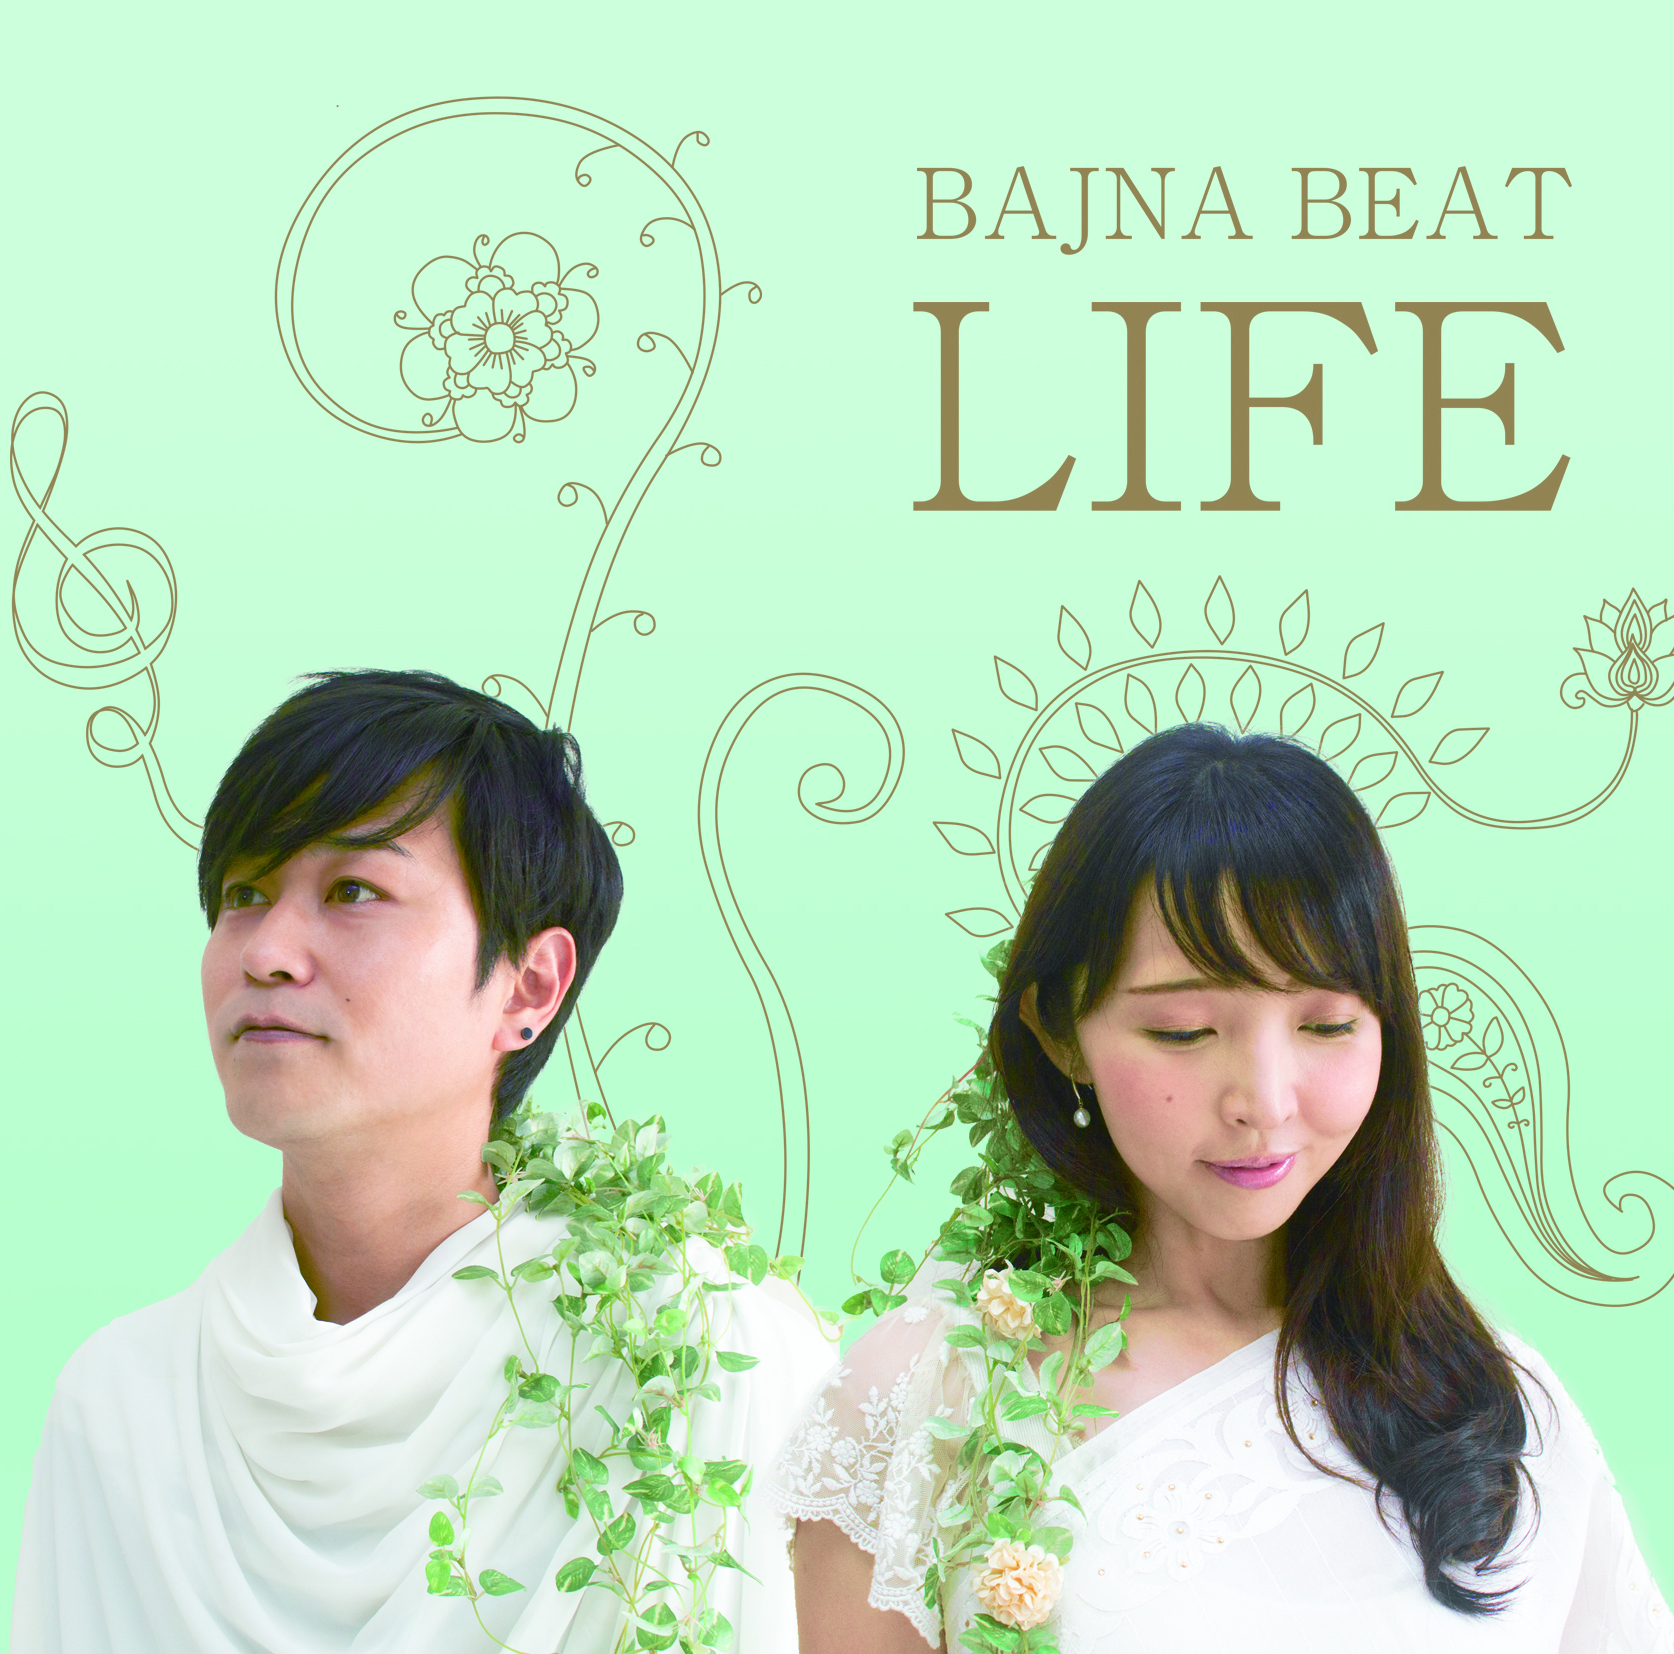 バングラデシュで活躍している日本人のユニット「BAJNA BEAT」のアルバム制作を協力しました。